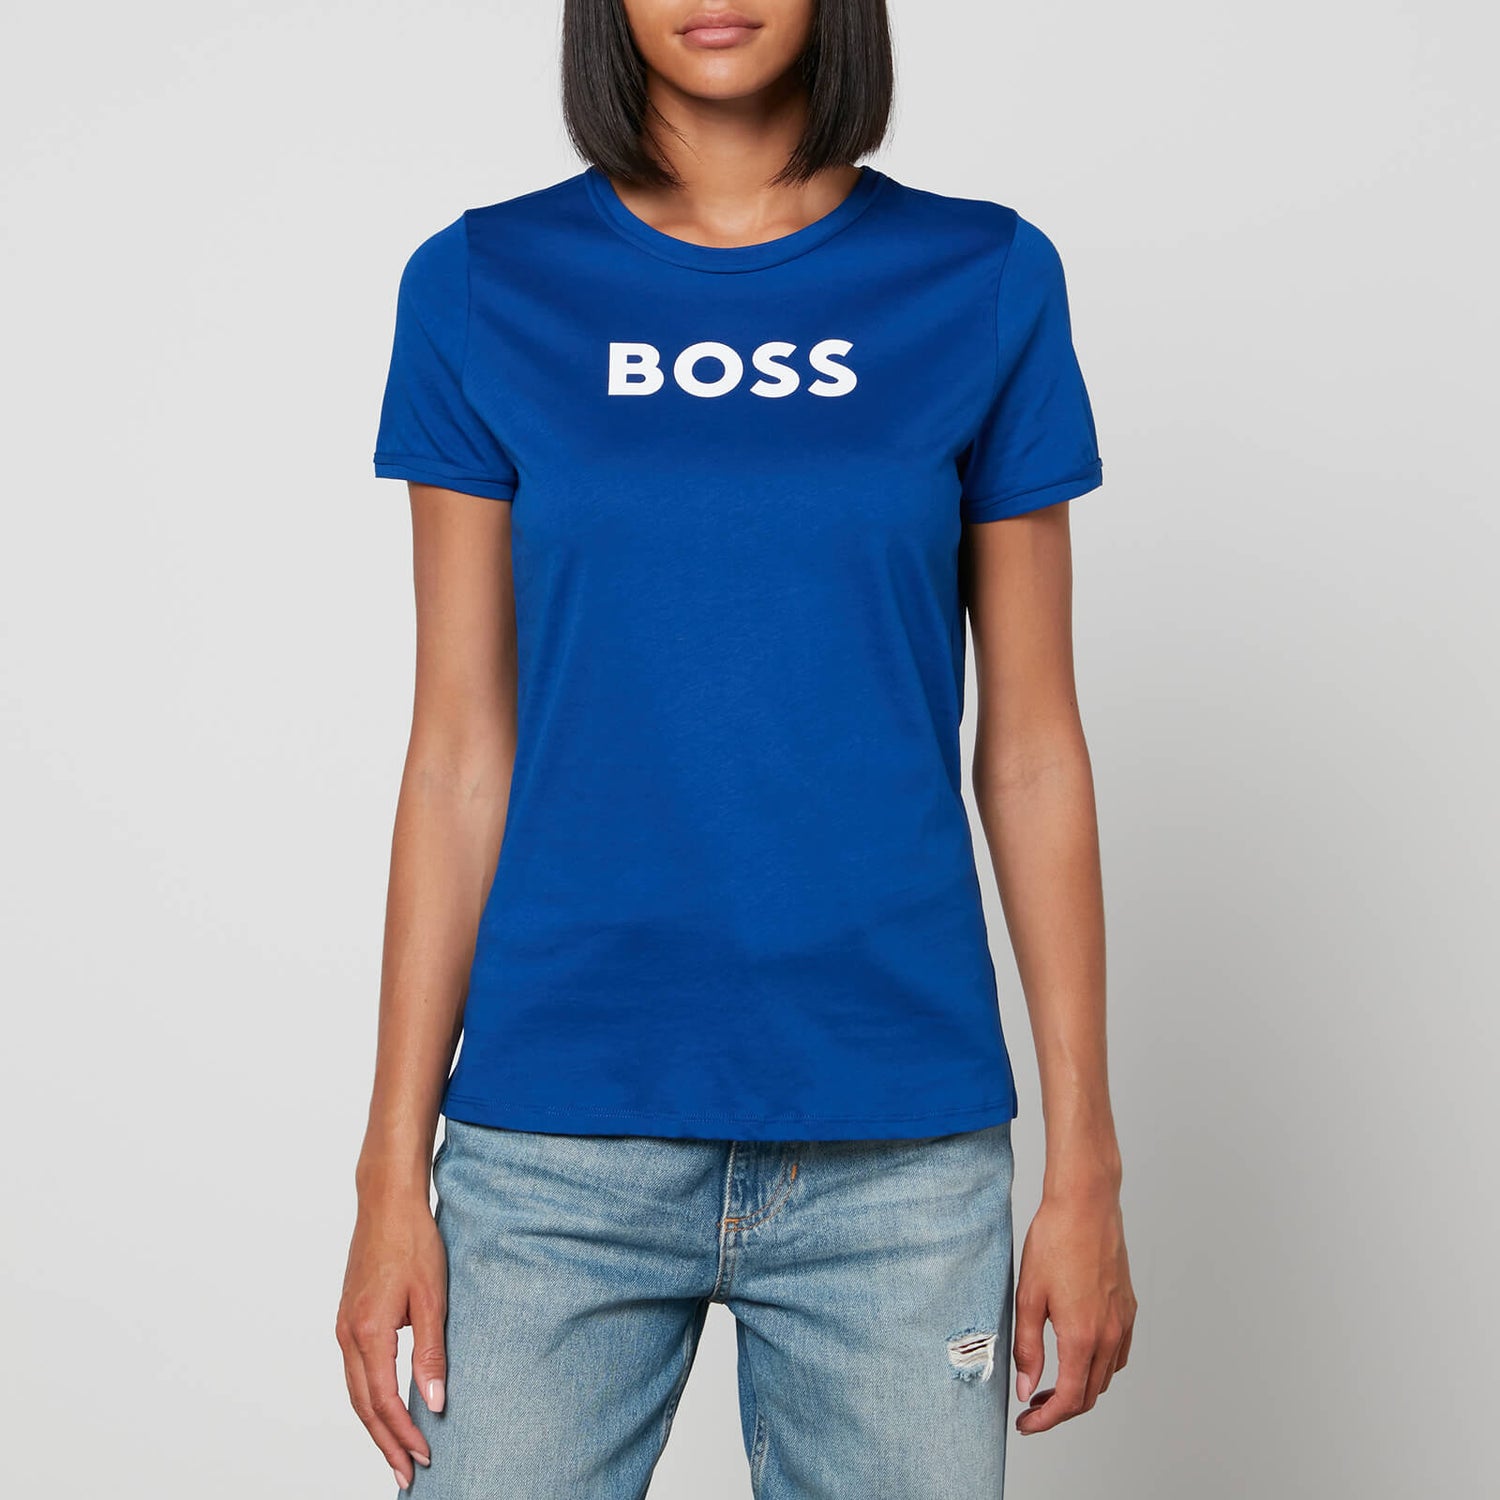 BOSS Women's Elogo T-Shirt - Open Blue - XS